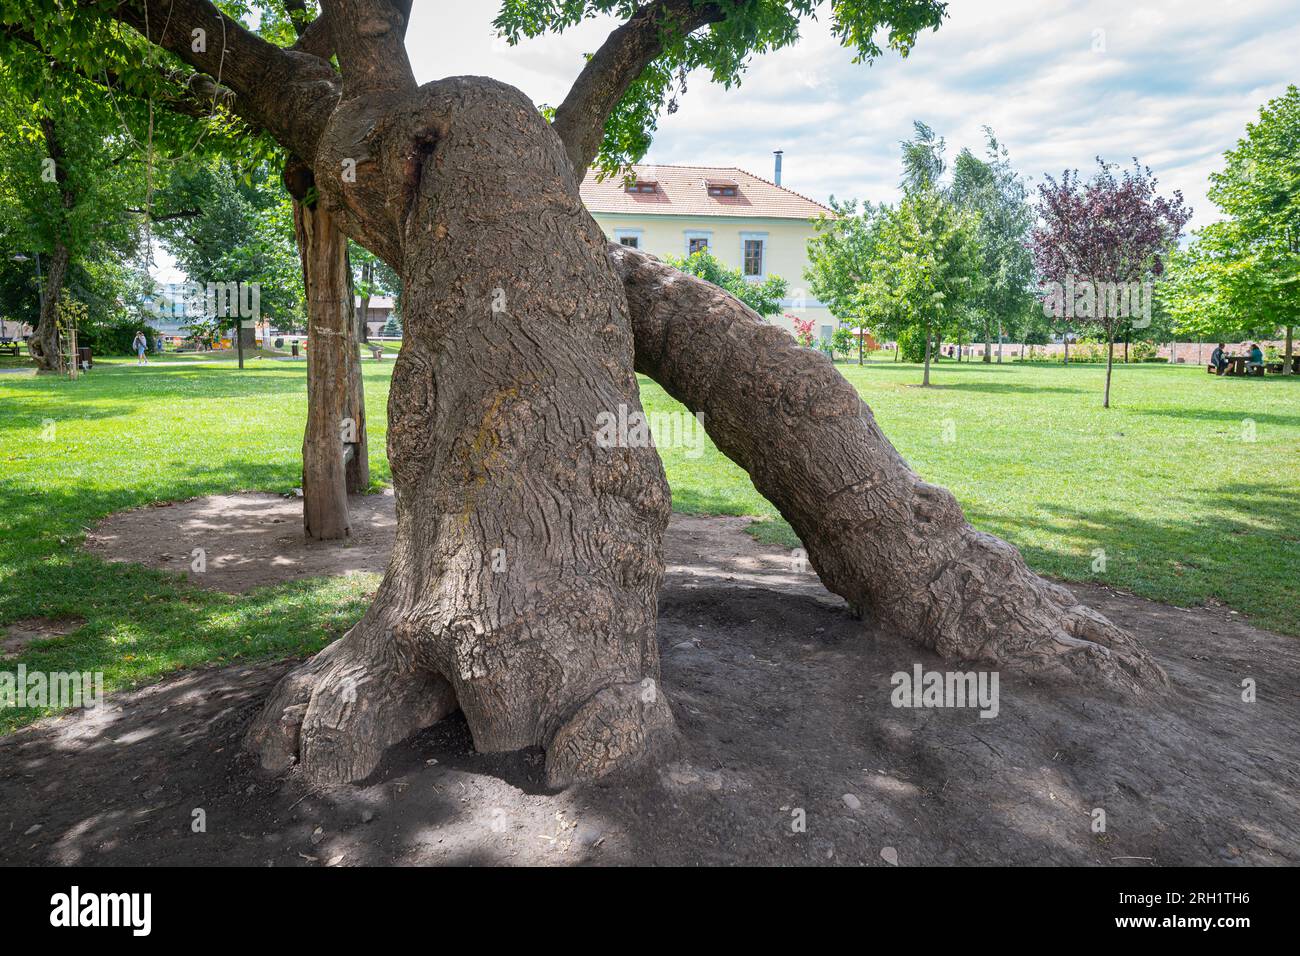 Gros troncs d'arbres qui ressemblent aux pattes d'un monstre géant. Attraction d'escalade pour les enfants dans la citadelle de Targu Mures, Roumanie. Banque D'Images